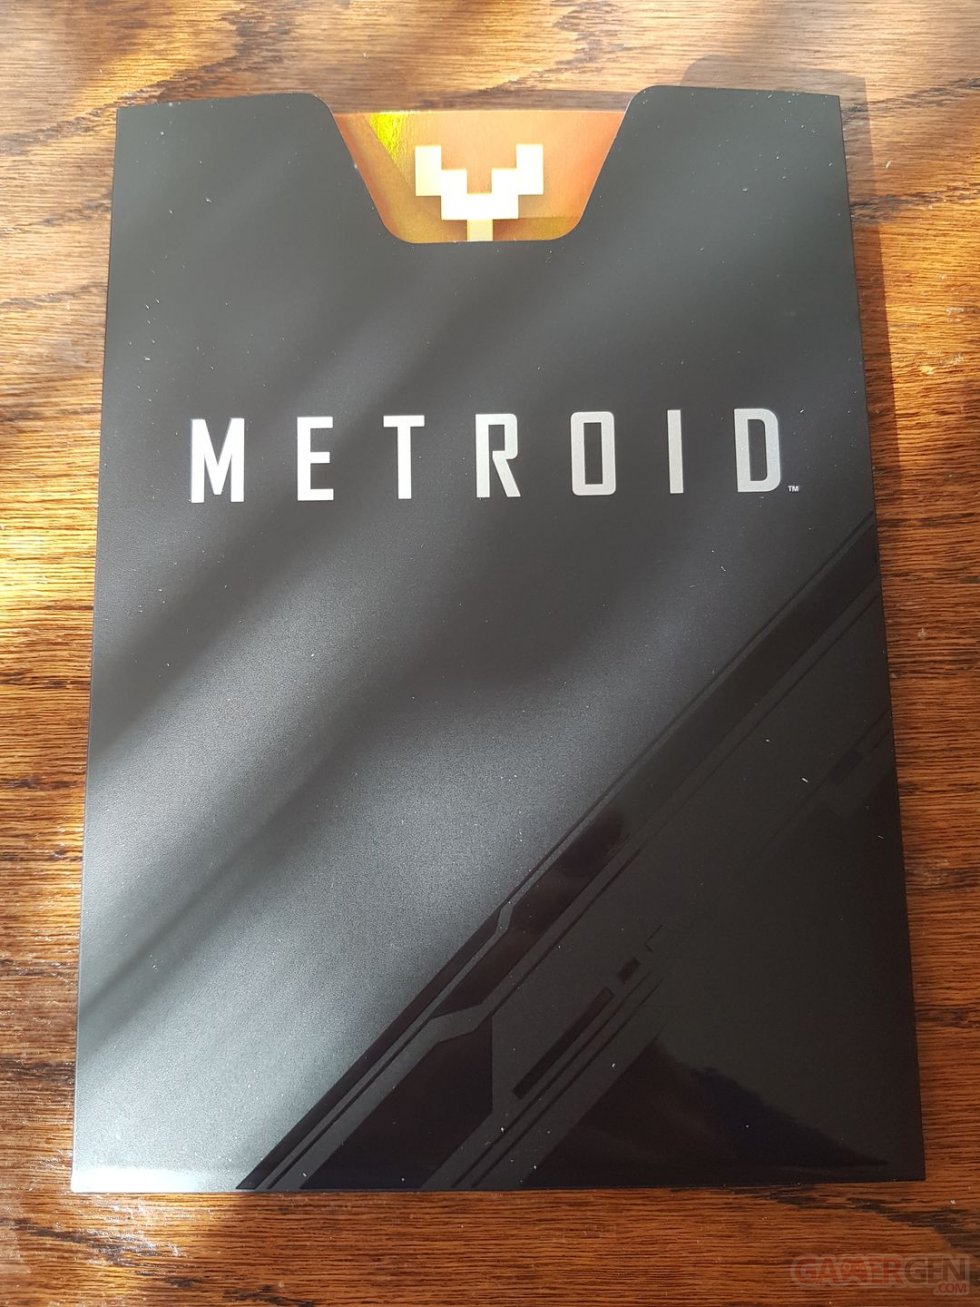 Metroid-Dread-unboxing-déballage-photos-17-08-10-2021